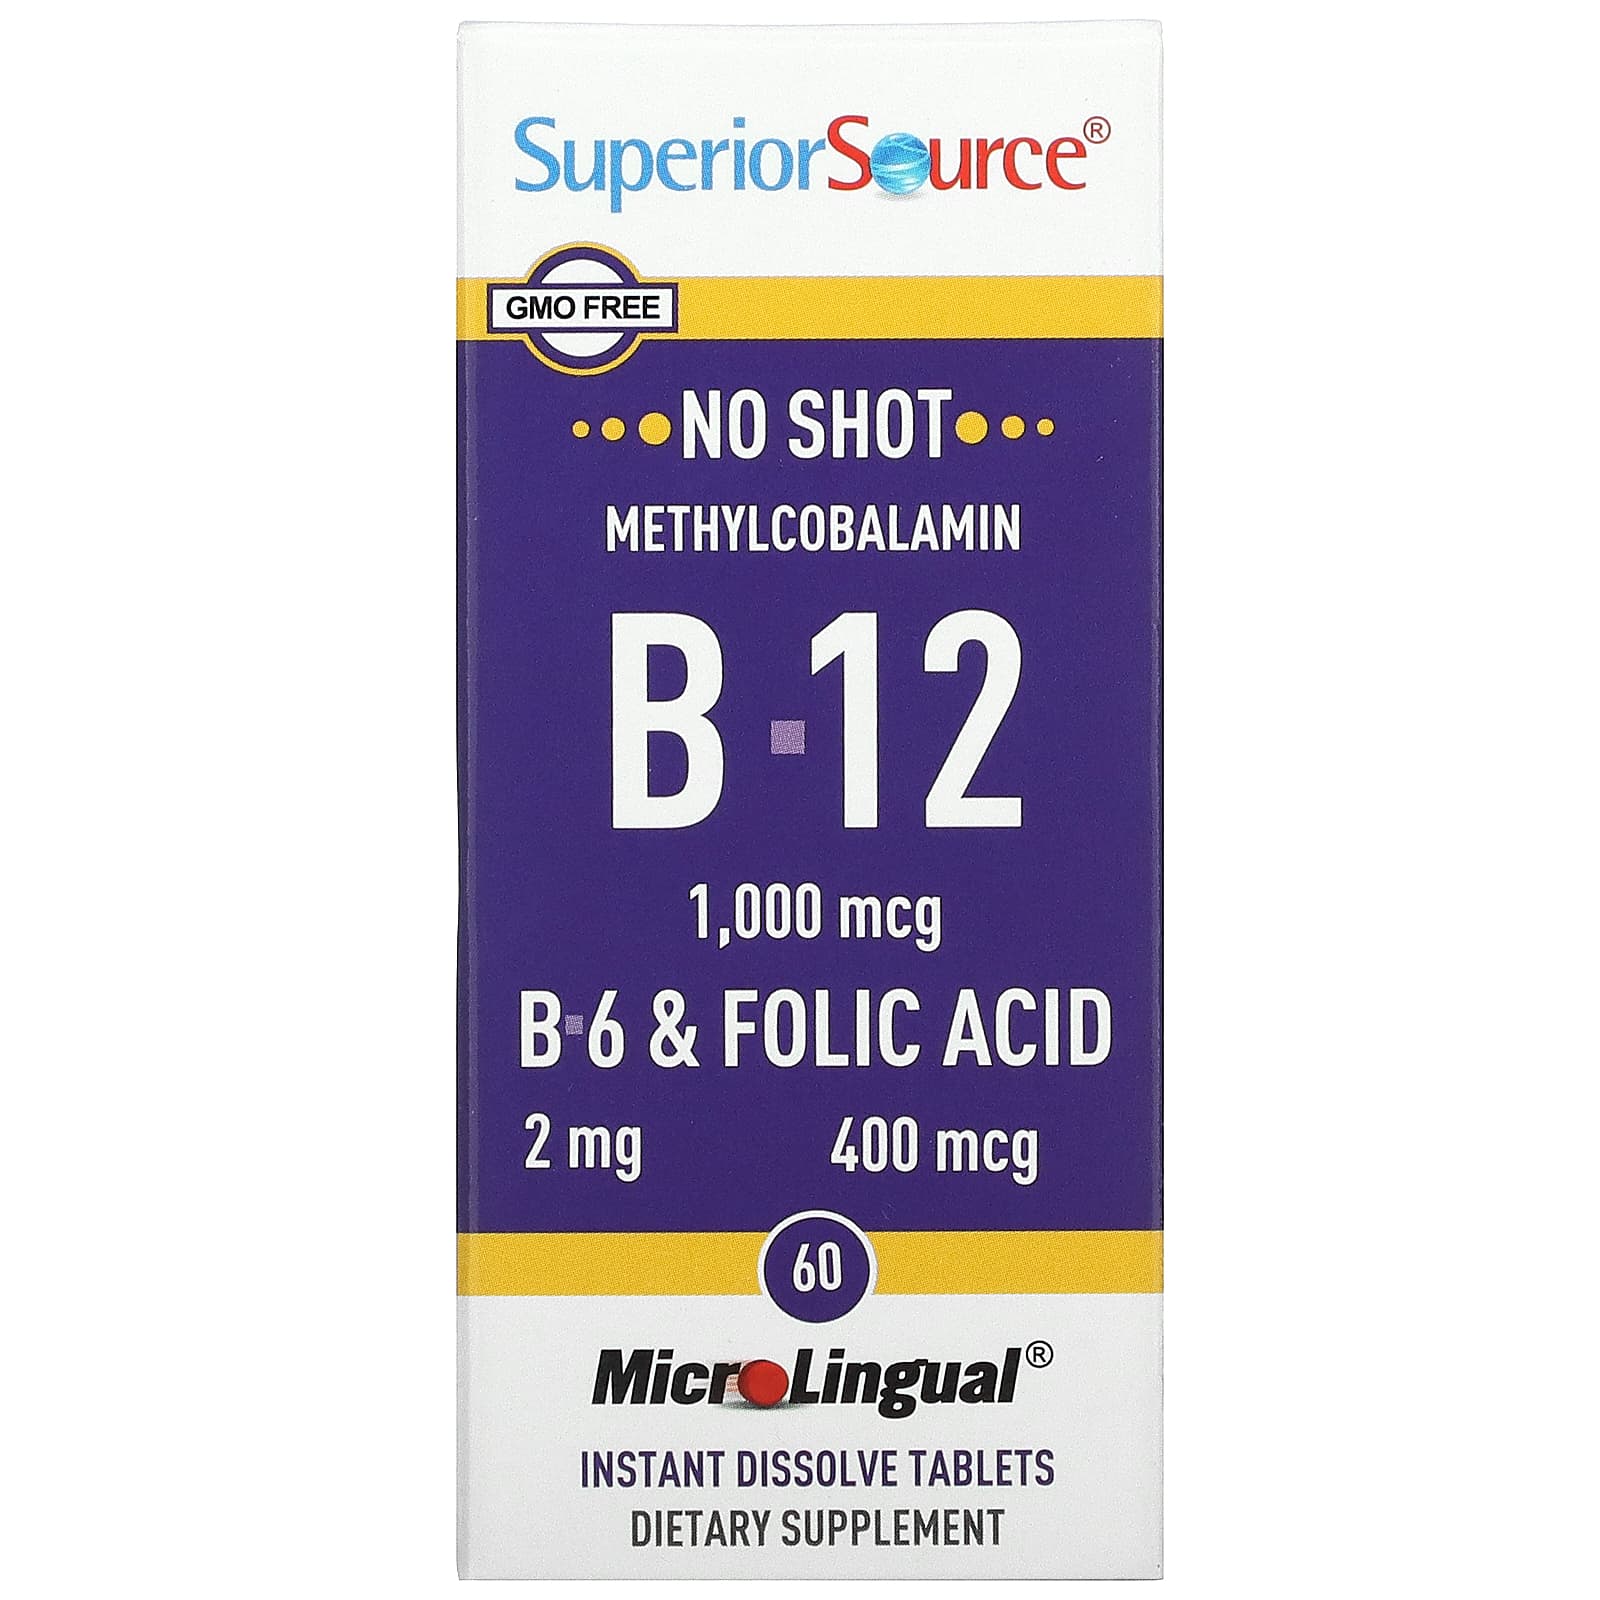 Superior Source No Shot Метилкобаламин В12 (1000 мкг) + В6 и фолиевая кислота (400 мкг) 60 таблеток